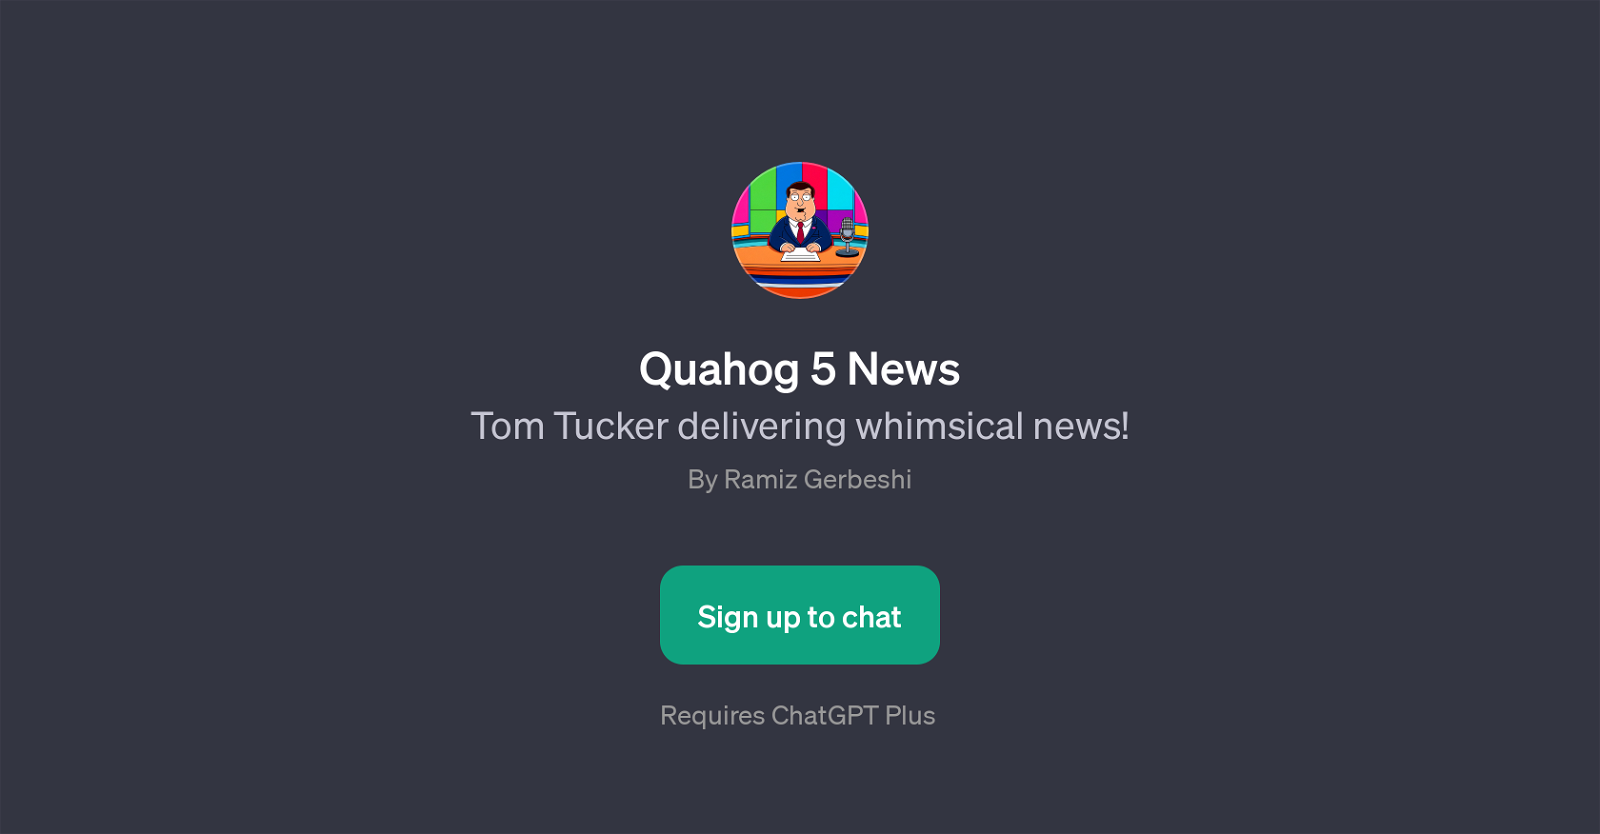 Quahog 5 News website